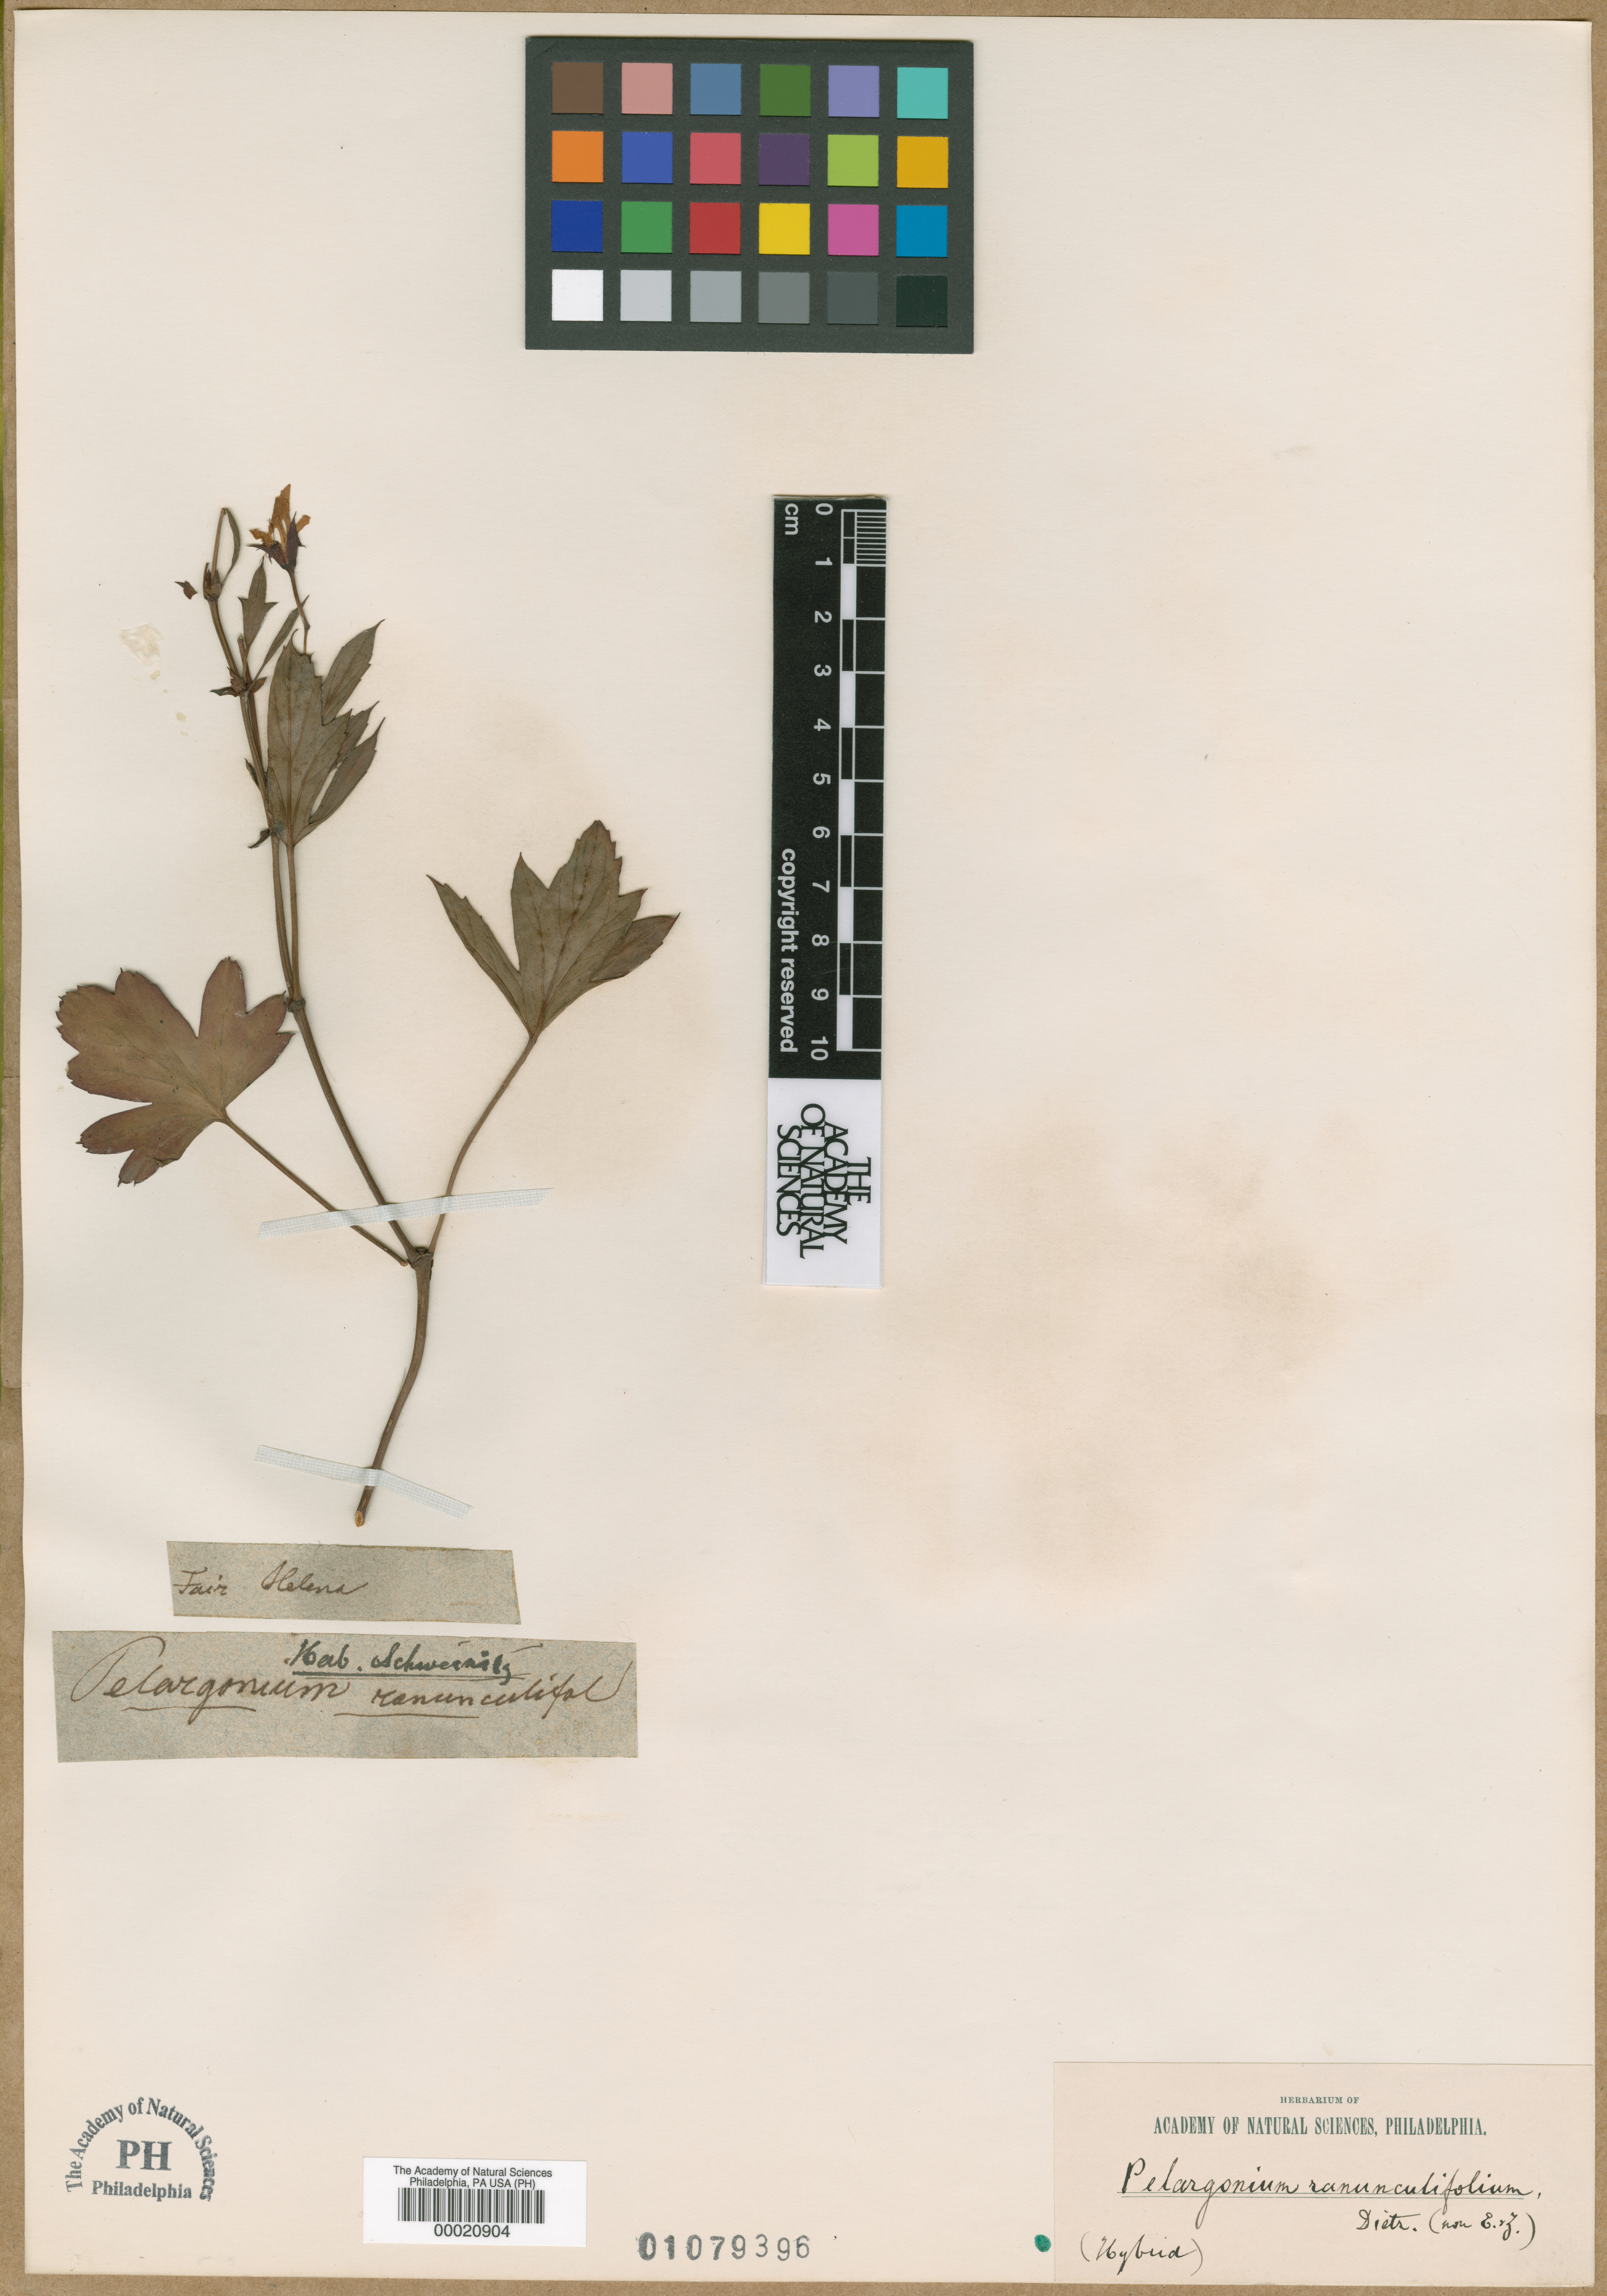 Pelargonium alchemilloides image